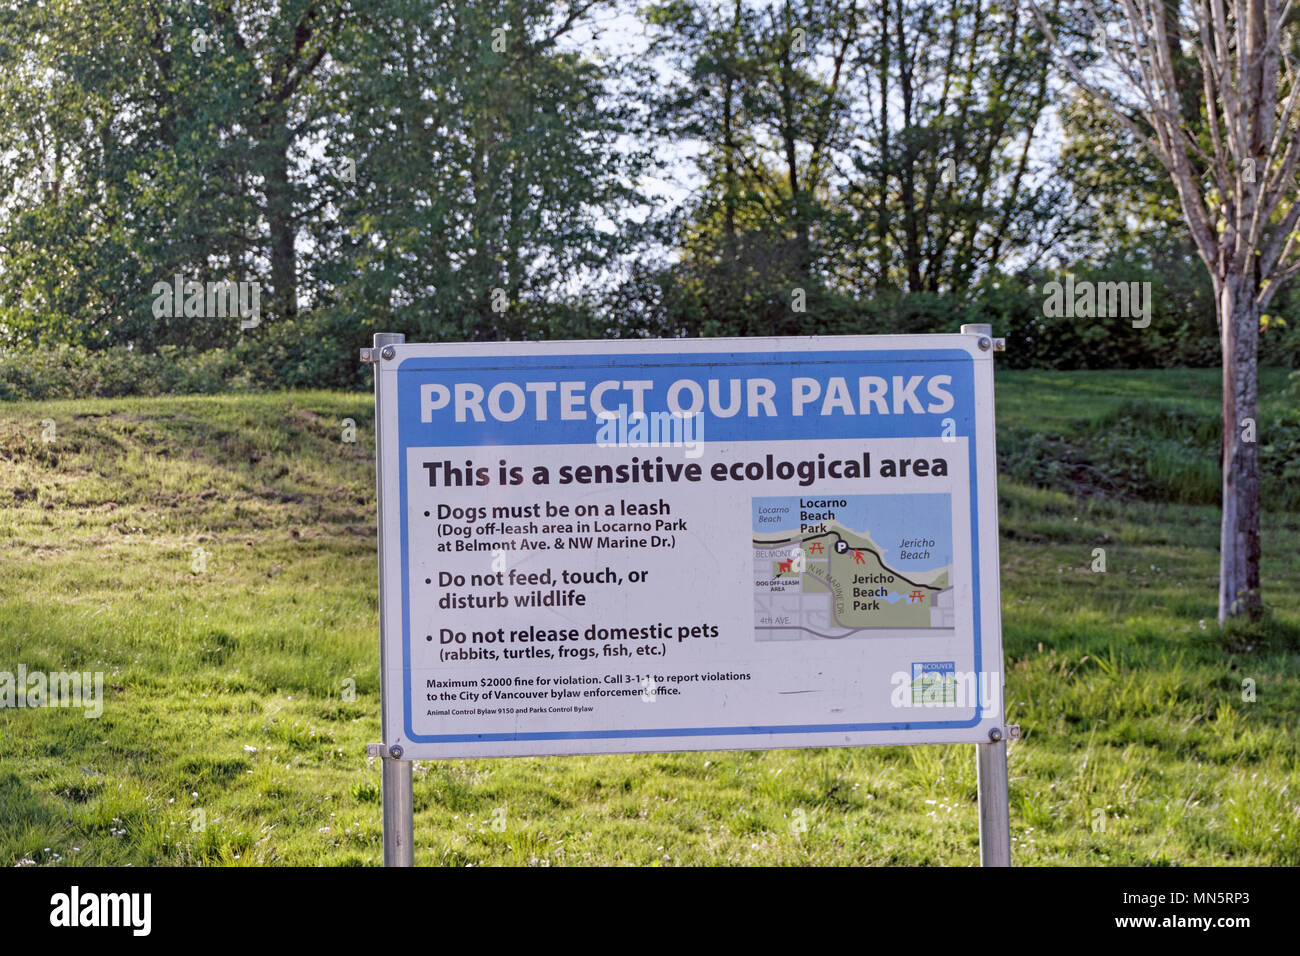 Unsere Parks in Jericho Beach Park ökologischen Bereich, Vancouver, BC, Kanada Schützen Stockfoto